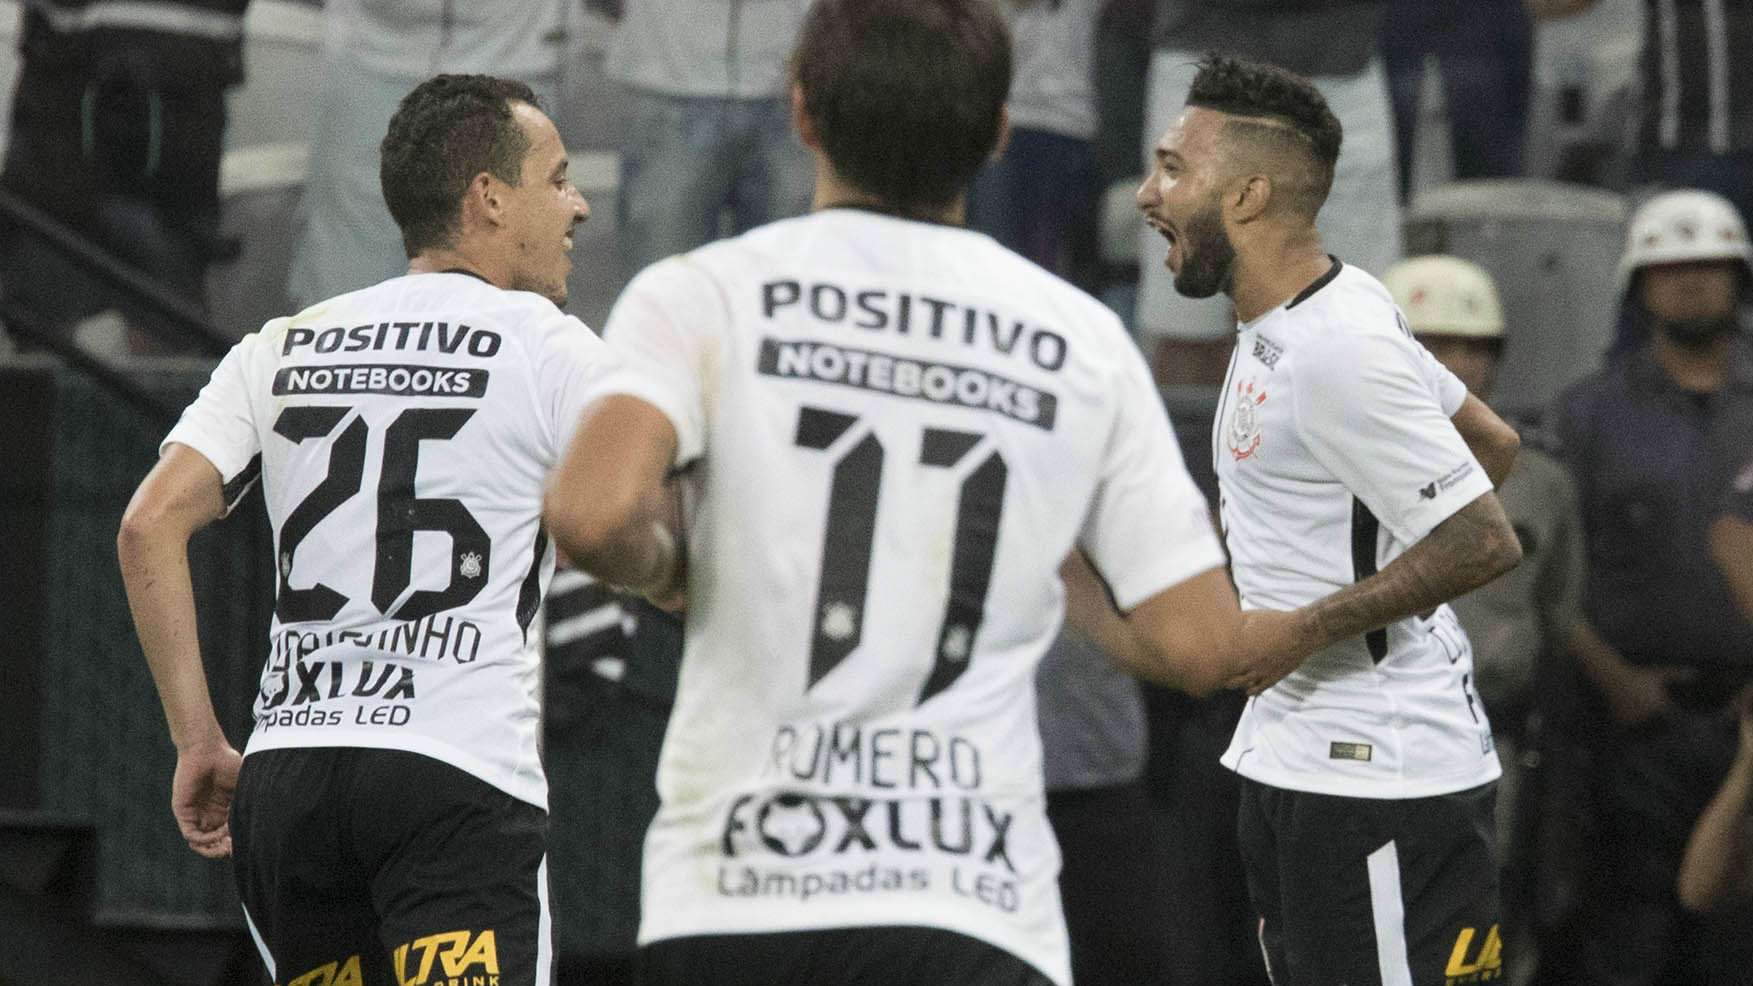 Rodriguinho, Romero e Clayson - Corinthians - 24/02/2018